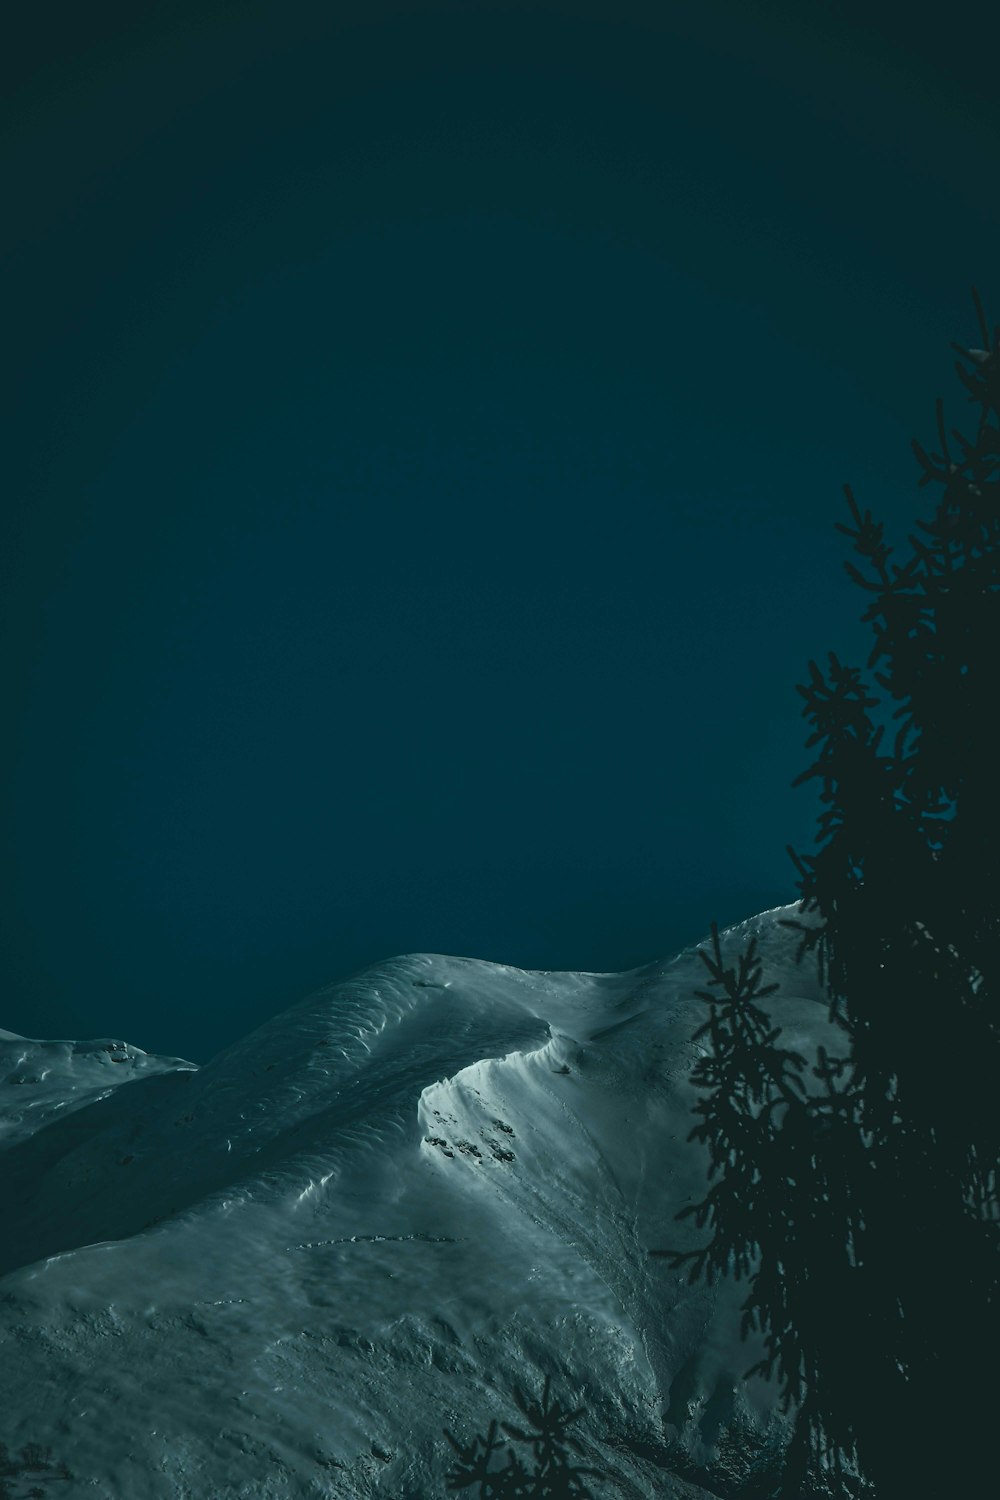 Montaña cubierta de nieve durante la noche